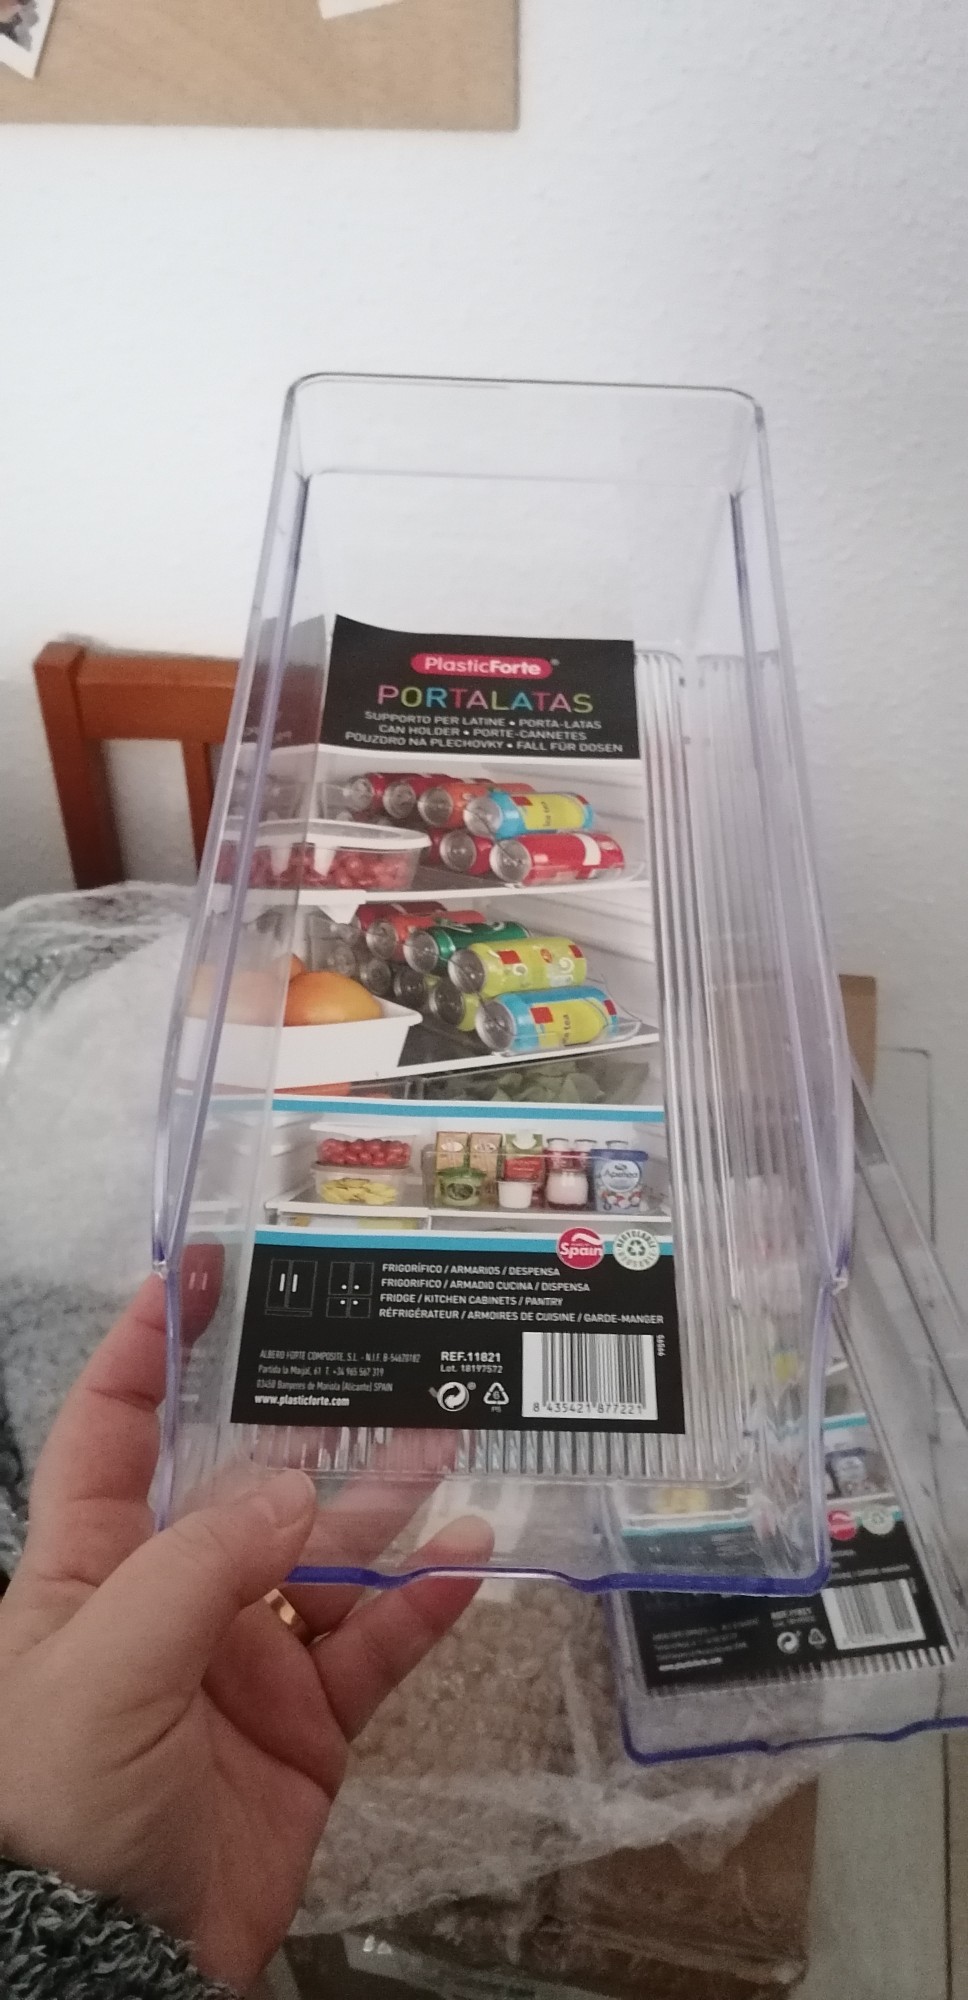 STARLEY-2uds,4uds ,Cajas de almacenaje para Nevera y congelador 35x13x10cm  Organizador de latas para frigorífico Organizador Nevera Transparente  Envases de plástico para Alimentos Fabricado en España